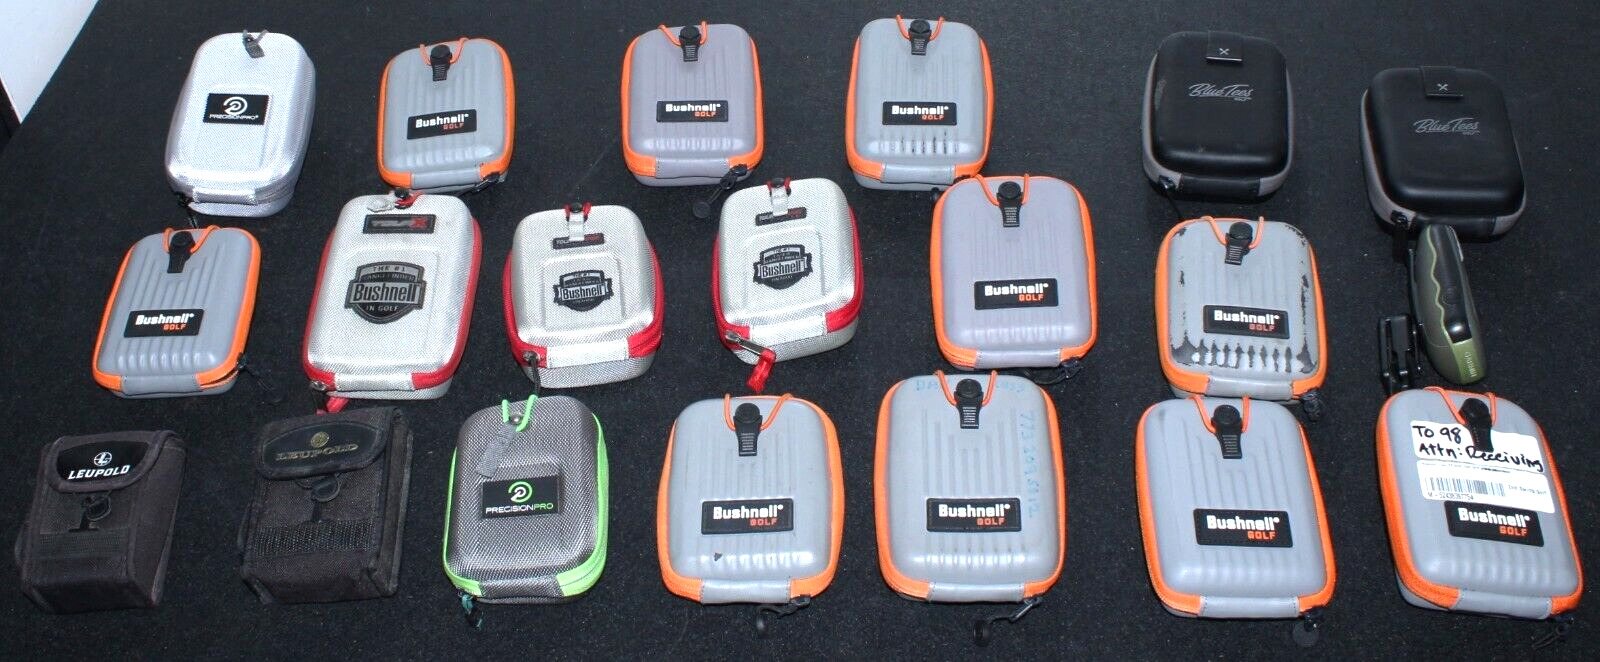 Lot of 19 Rangefinder Cases and 1 Defective Rangefinder/GPS Unit